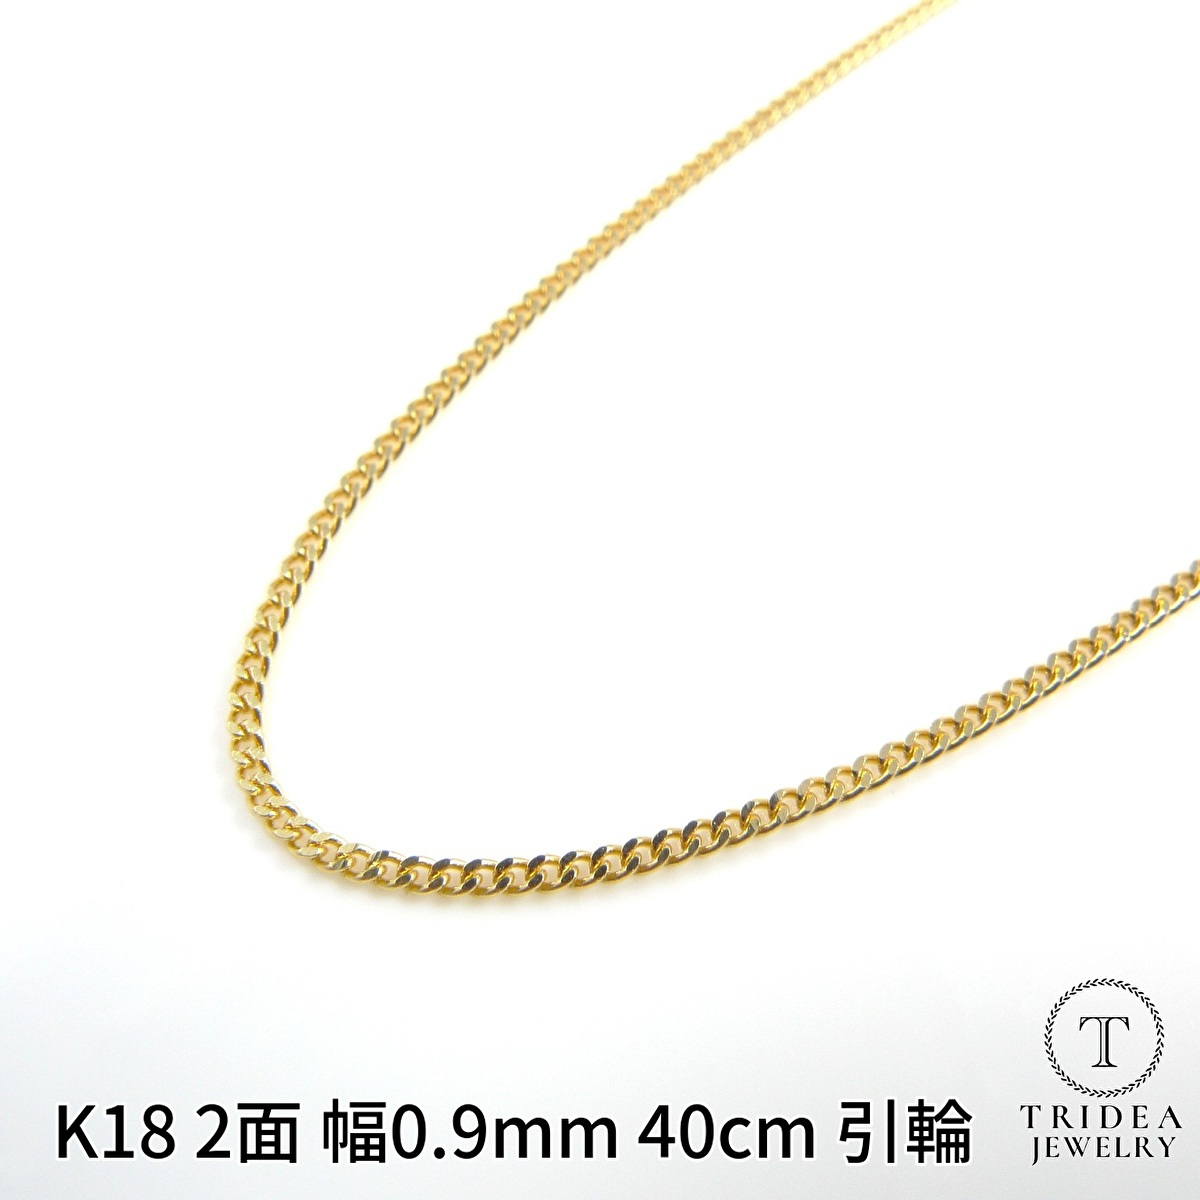 100%新品HOTG-9☆K18 喜平 キヘイチェーン ネックレス 5.0g/40cm ゴールド